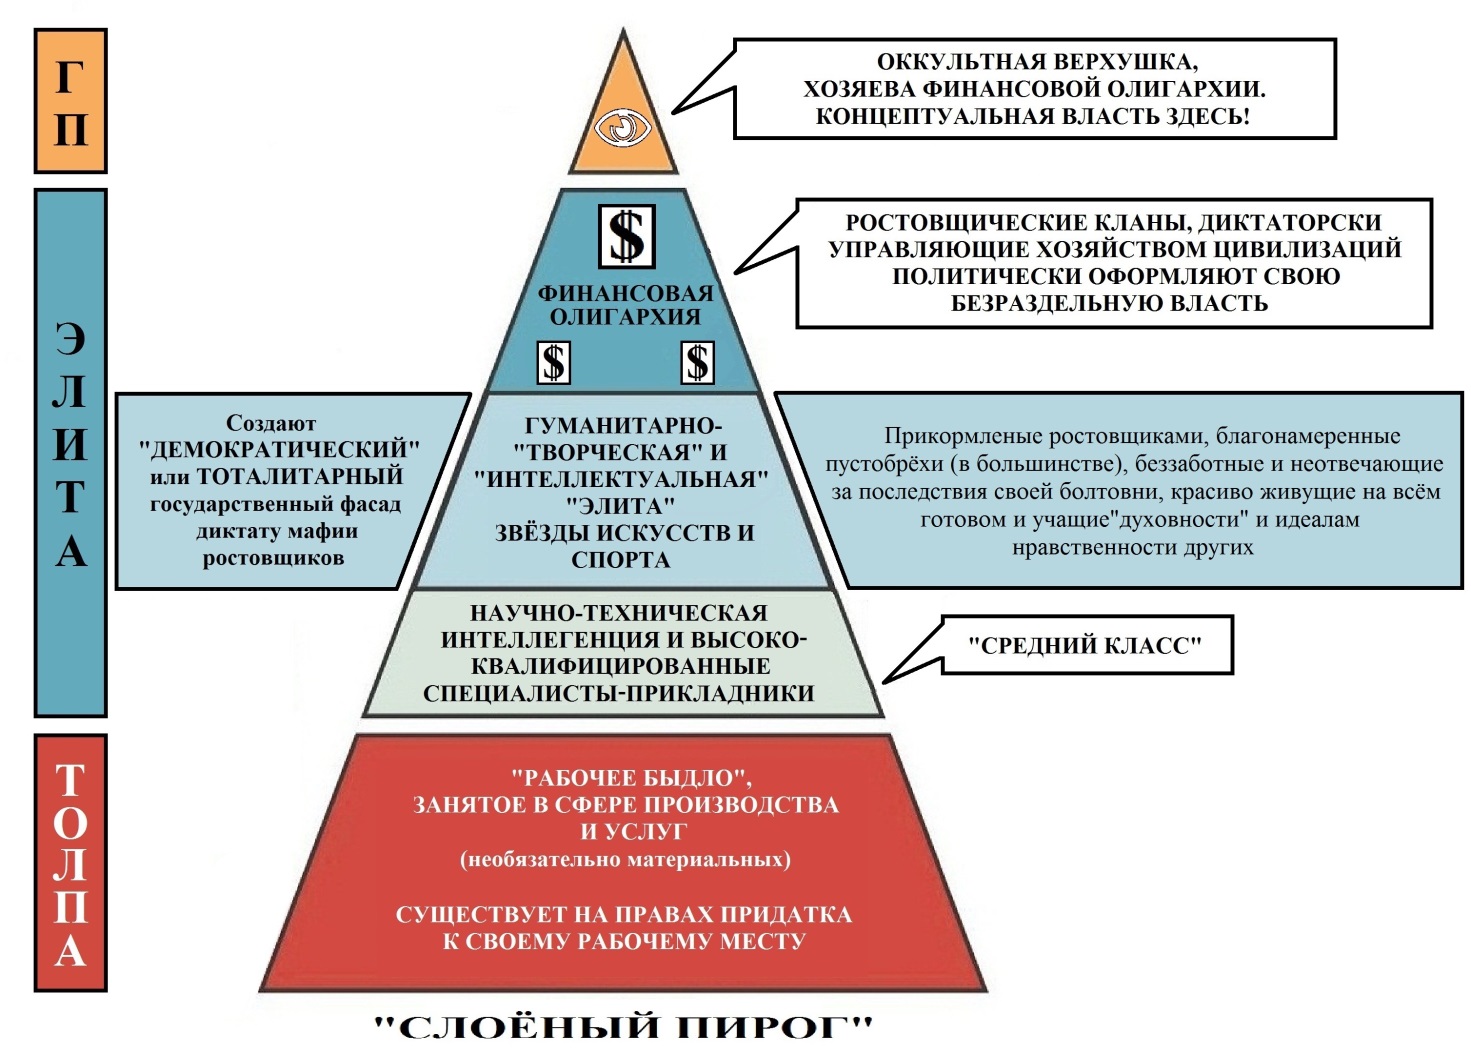 Правящая верхушка общества. Иерархия управления миром. Социальная структура общества пирамида. Схема управления миром пирамида. Социальная стратификация пирамида.